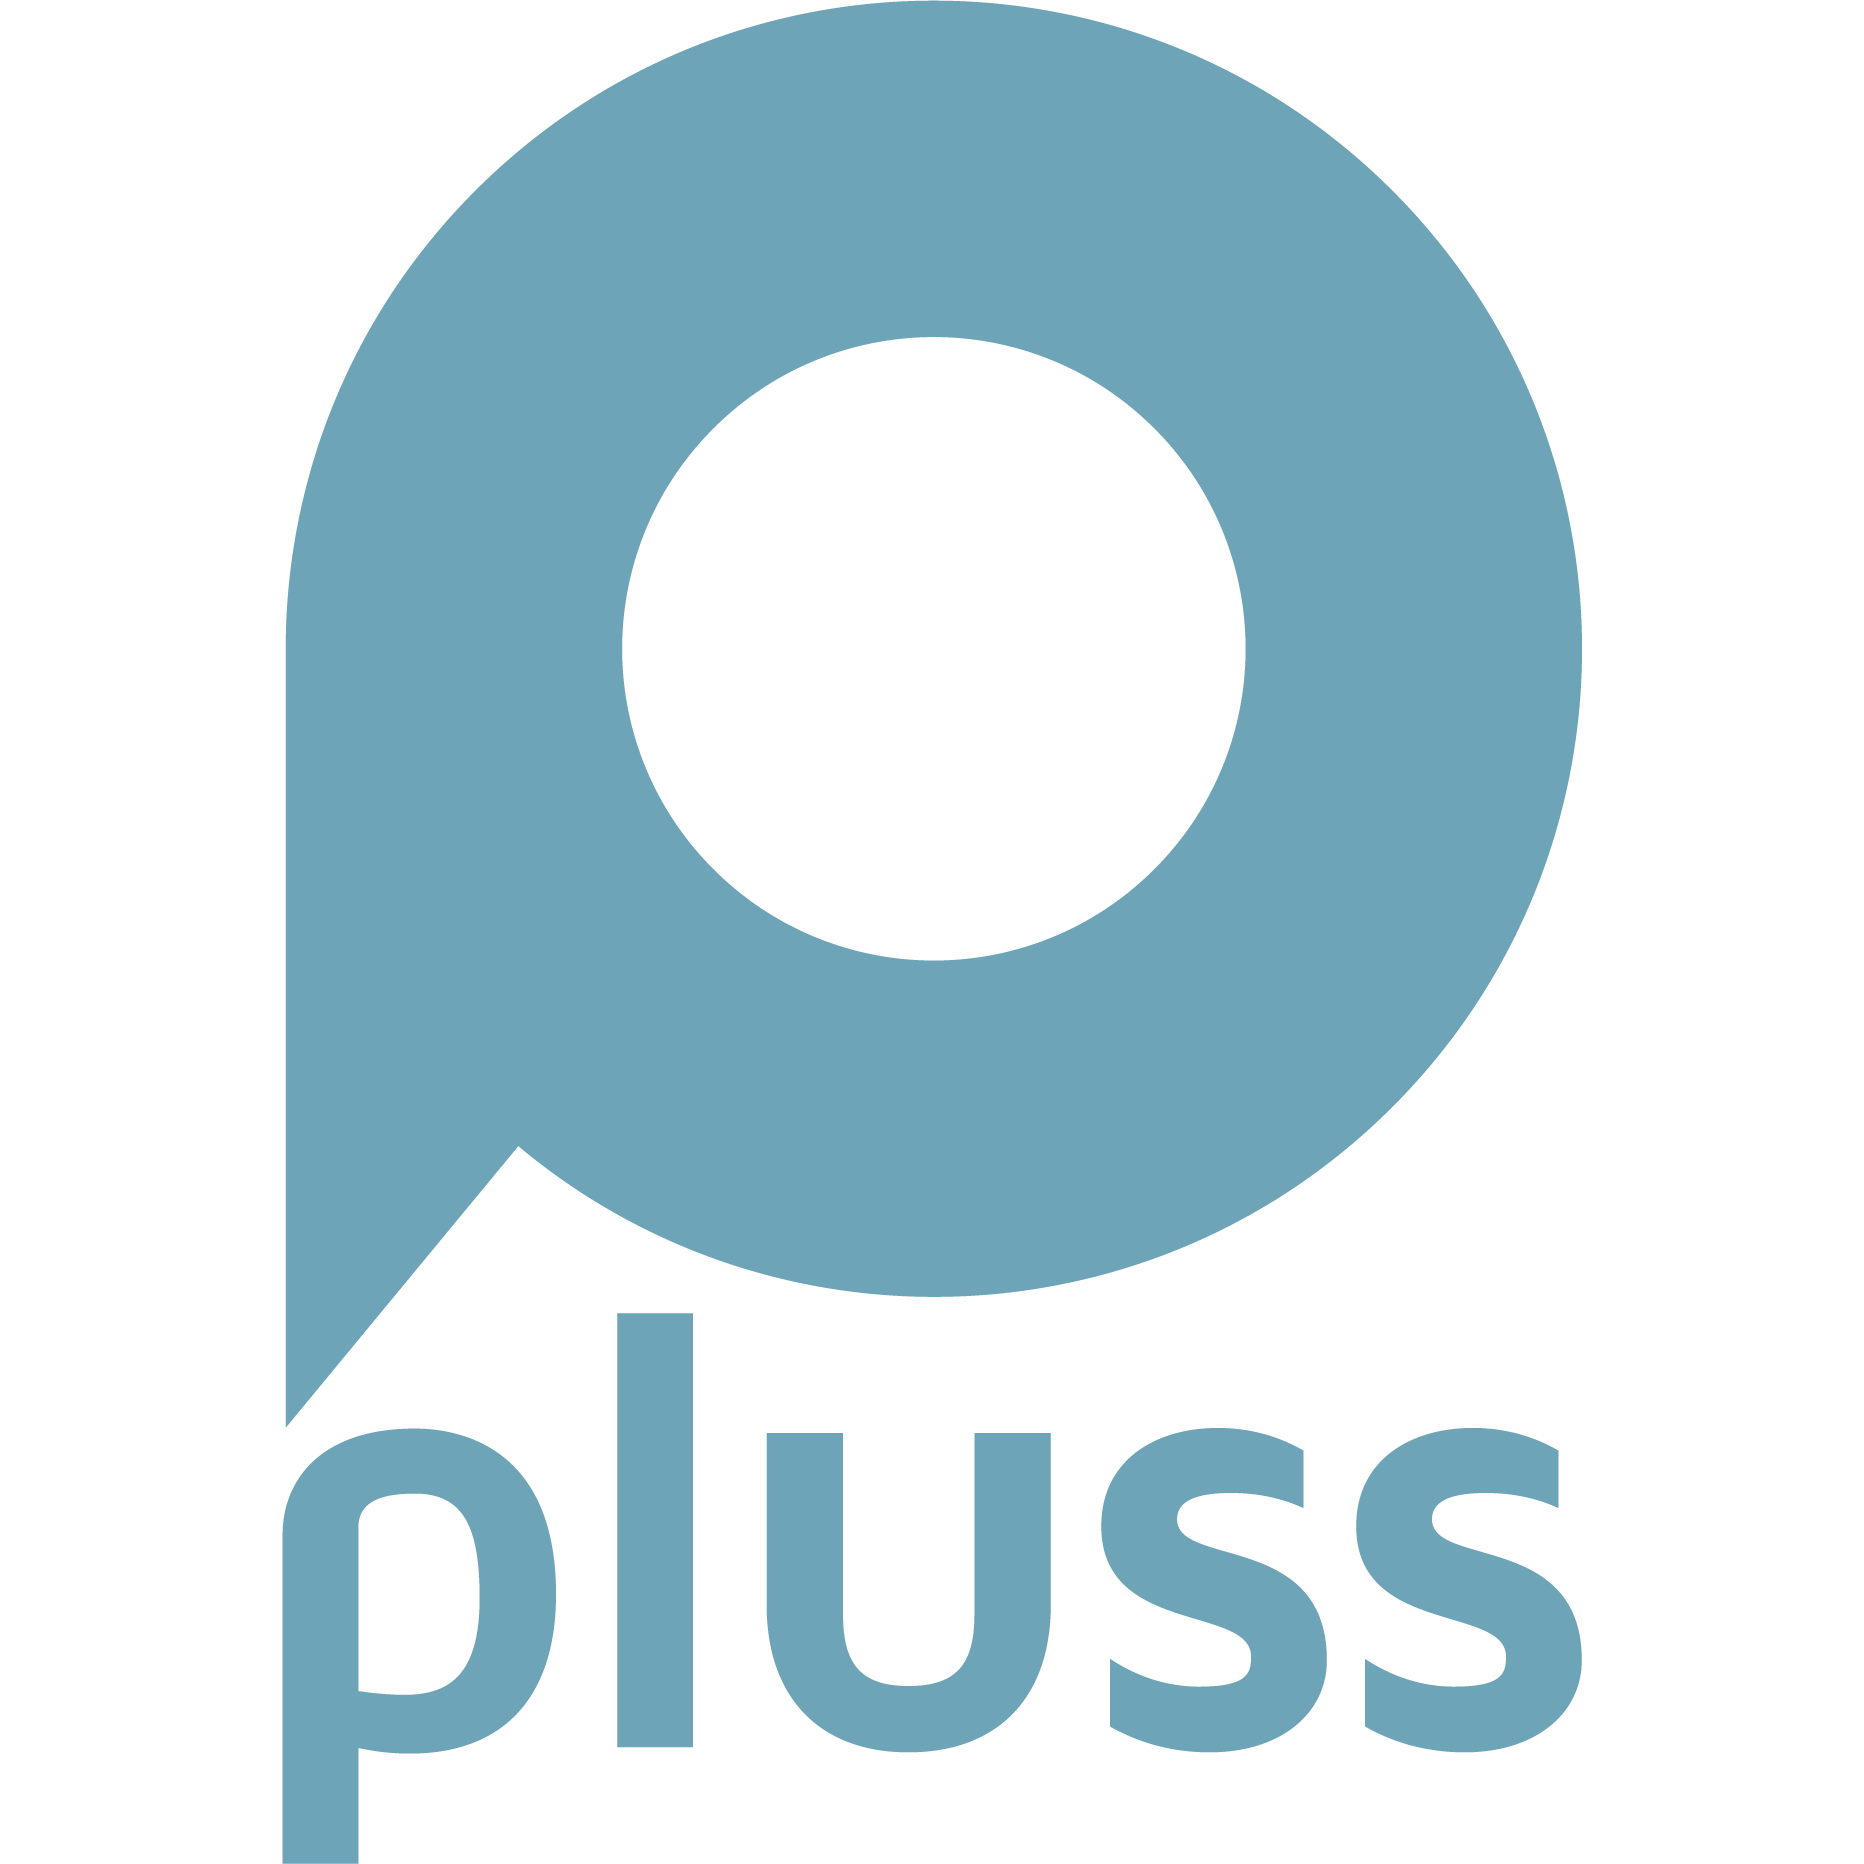 pluss Dortmund - Care People (Medizin/Pflege) & Bildung und Soziales in Dortmund - Logo